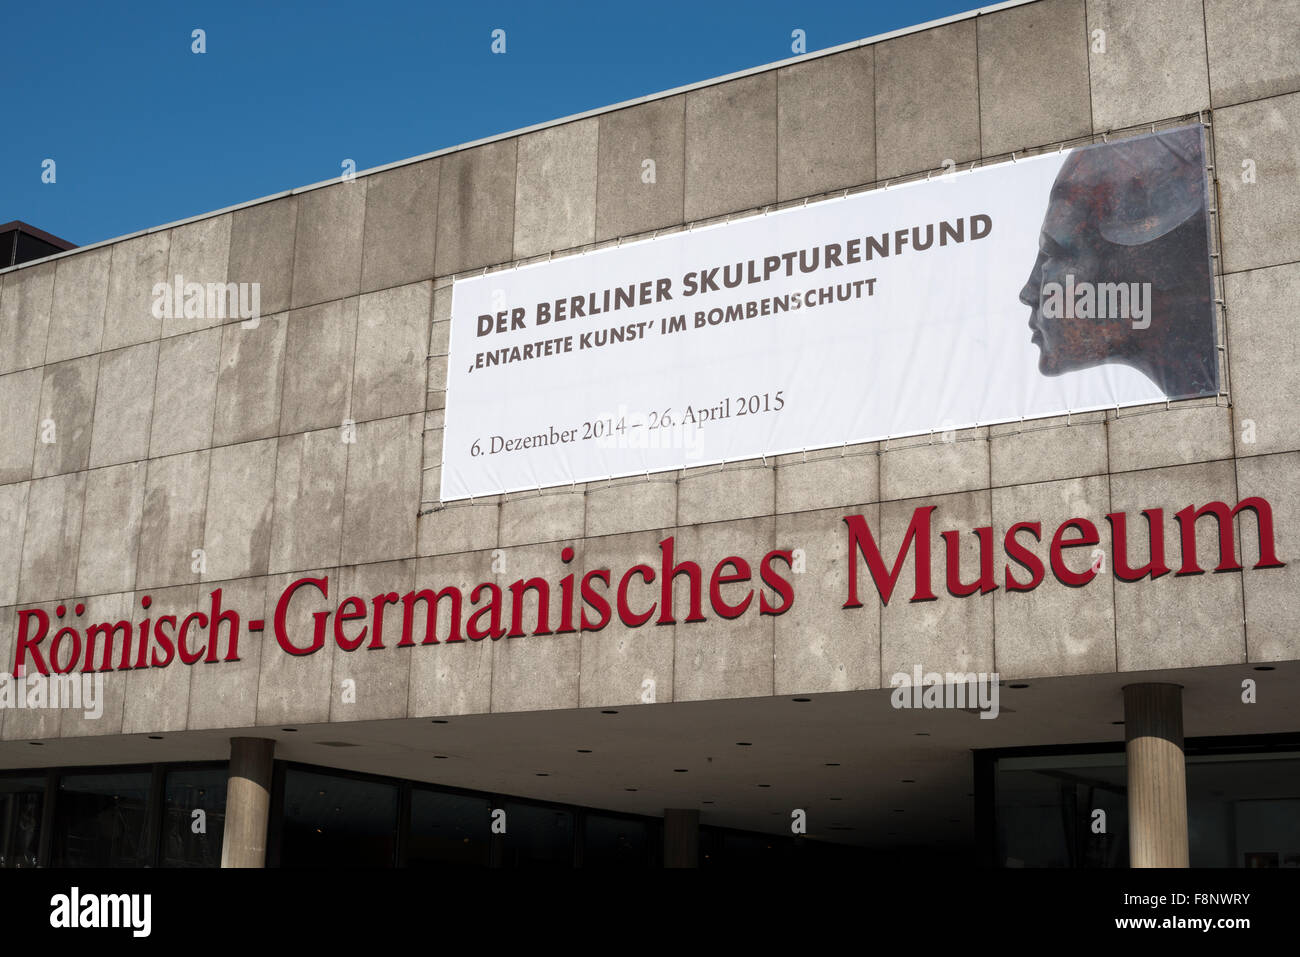 Der Berliner Komisch-Germanisches Skulpturenfund exposición, museo, Colonia, Alemania. Foto de stock